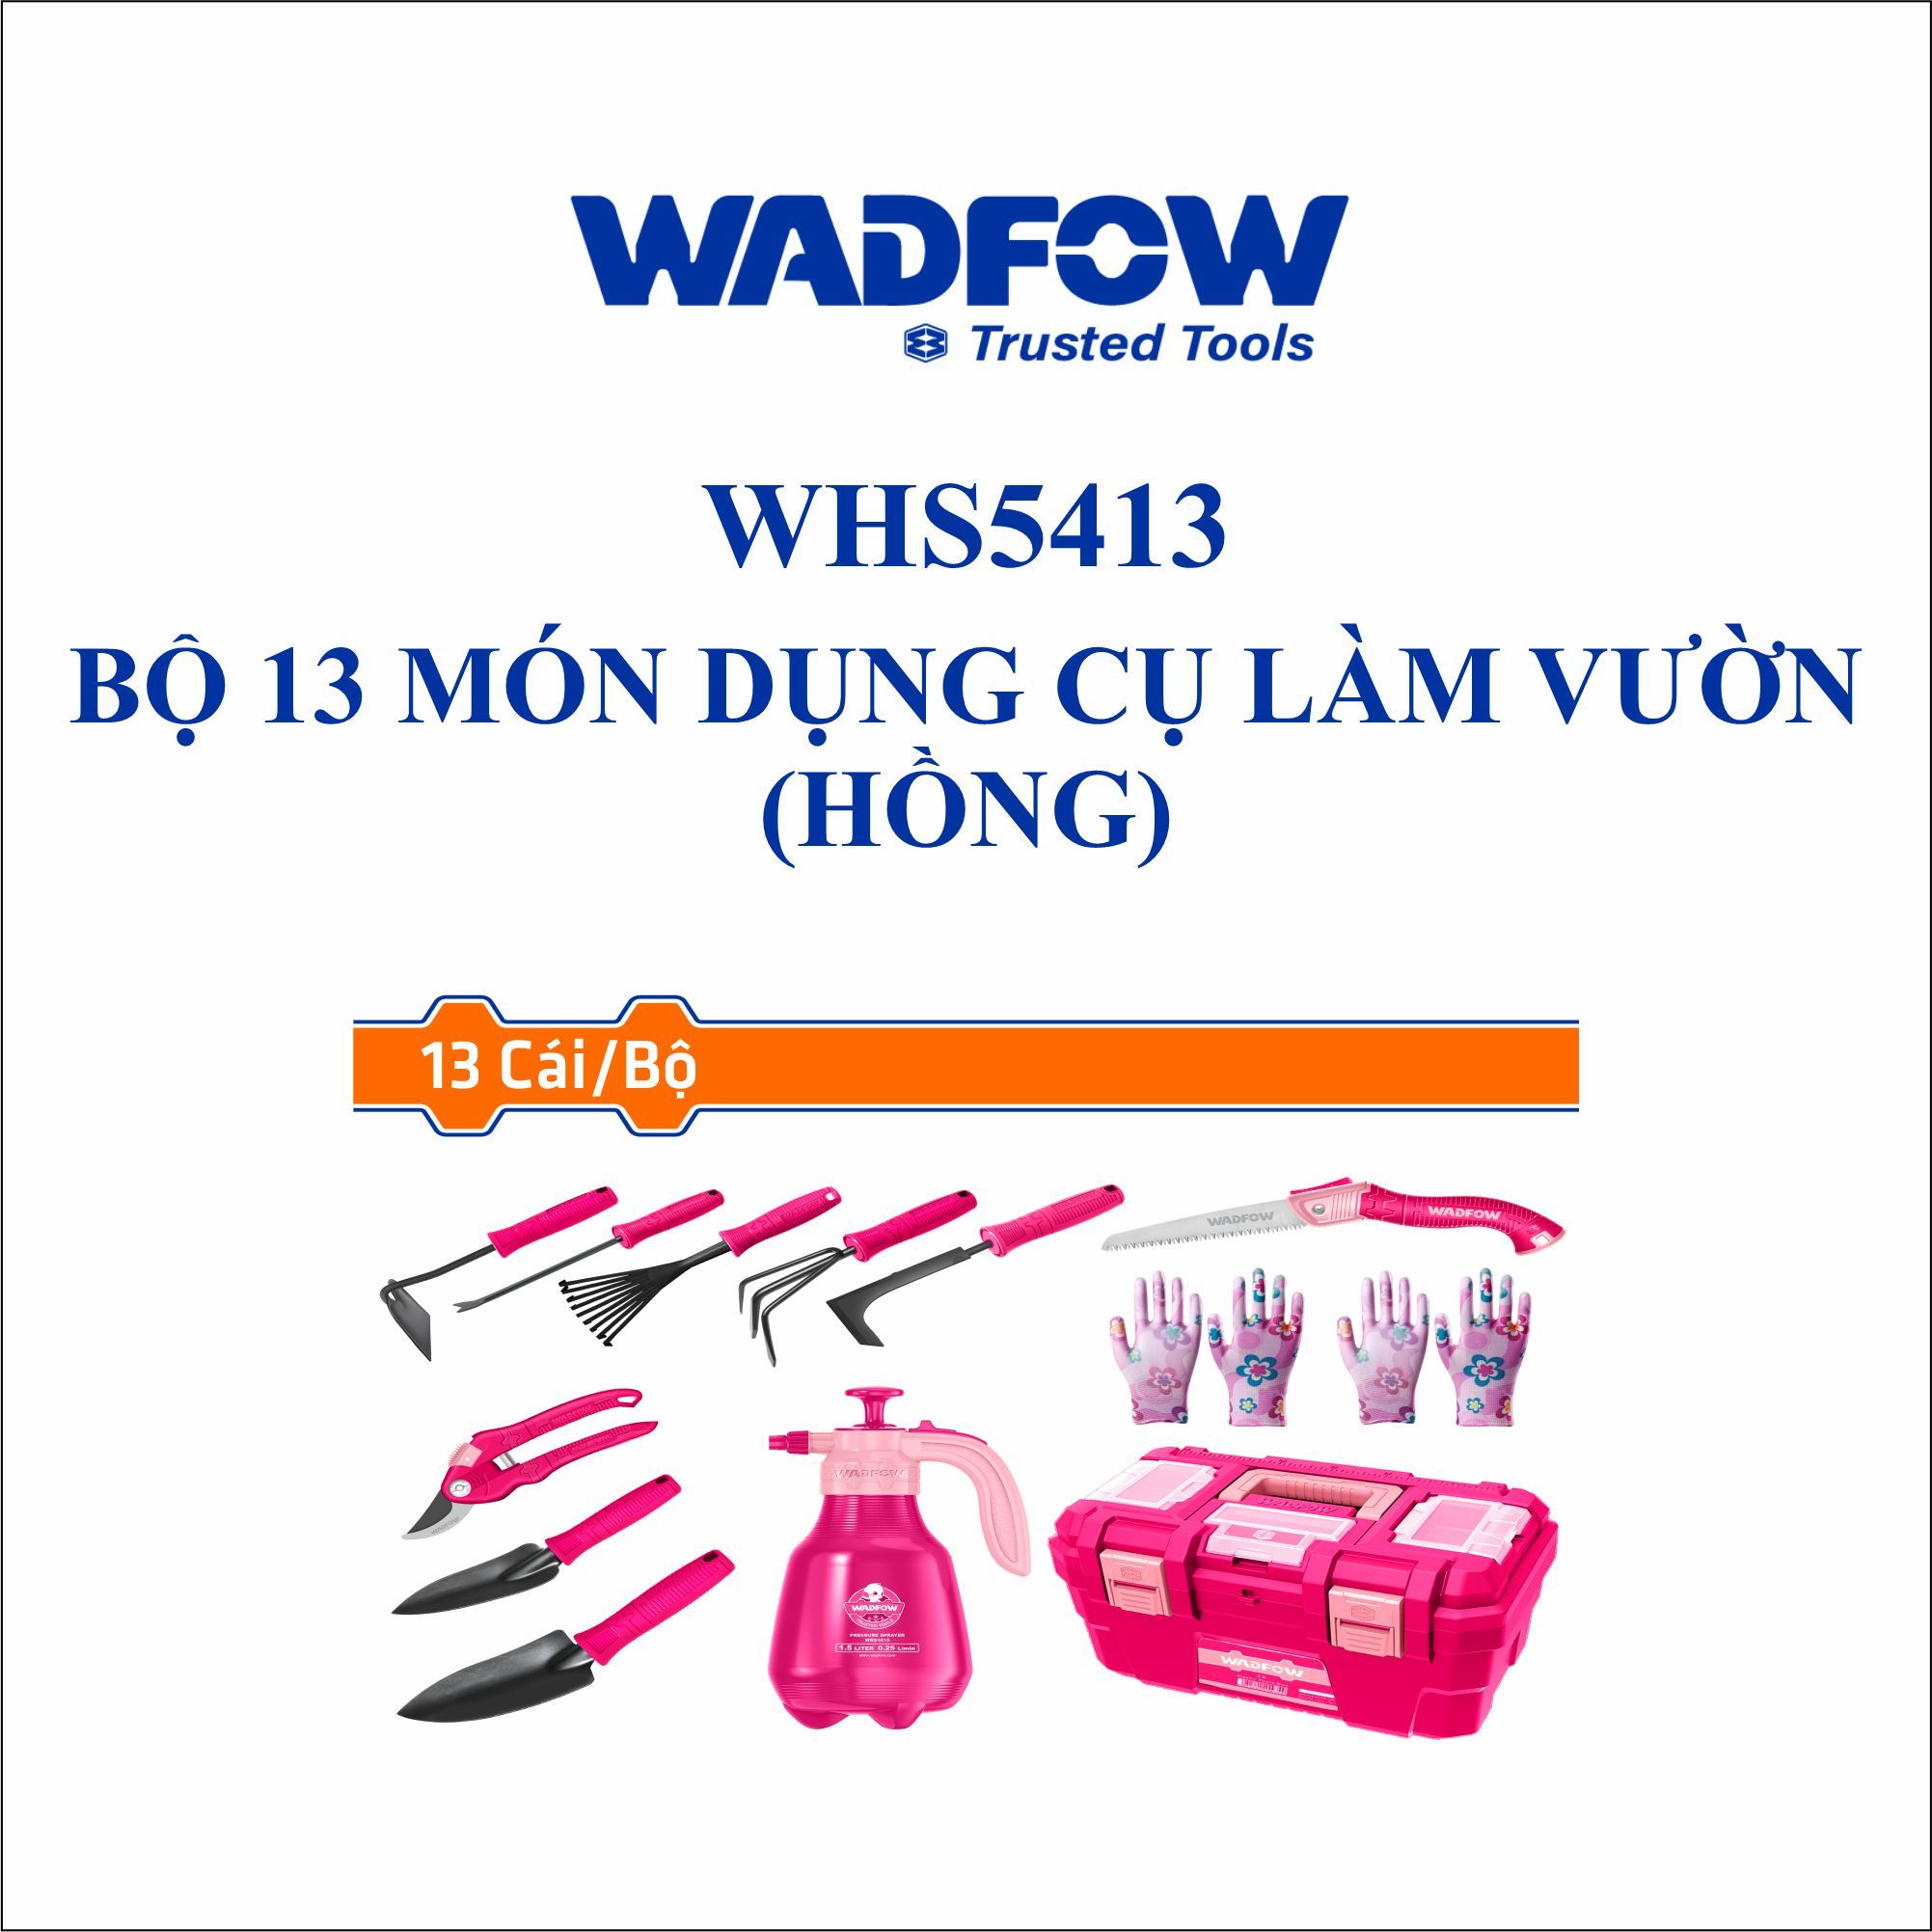  Bộ 13 món dụng cụ làm vườn (hồng) WADFOW WHS5413 